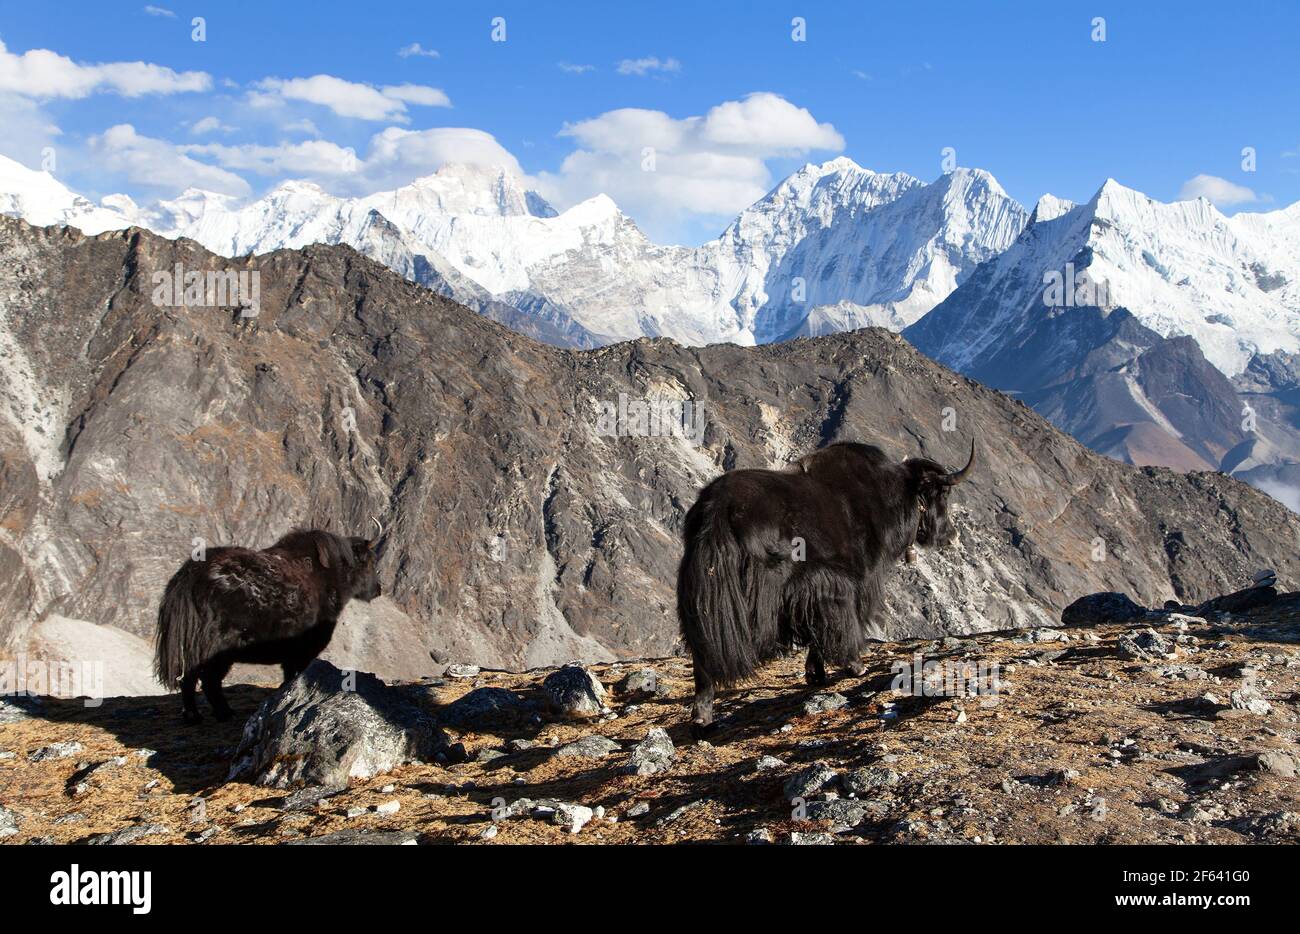 yak, groupe de deux yaks sur le chemin du camp de base de l'Everest, Népal Himalaya Yak est ferme et caravane d'animaux au Népal et au Tibet Banque D'Images